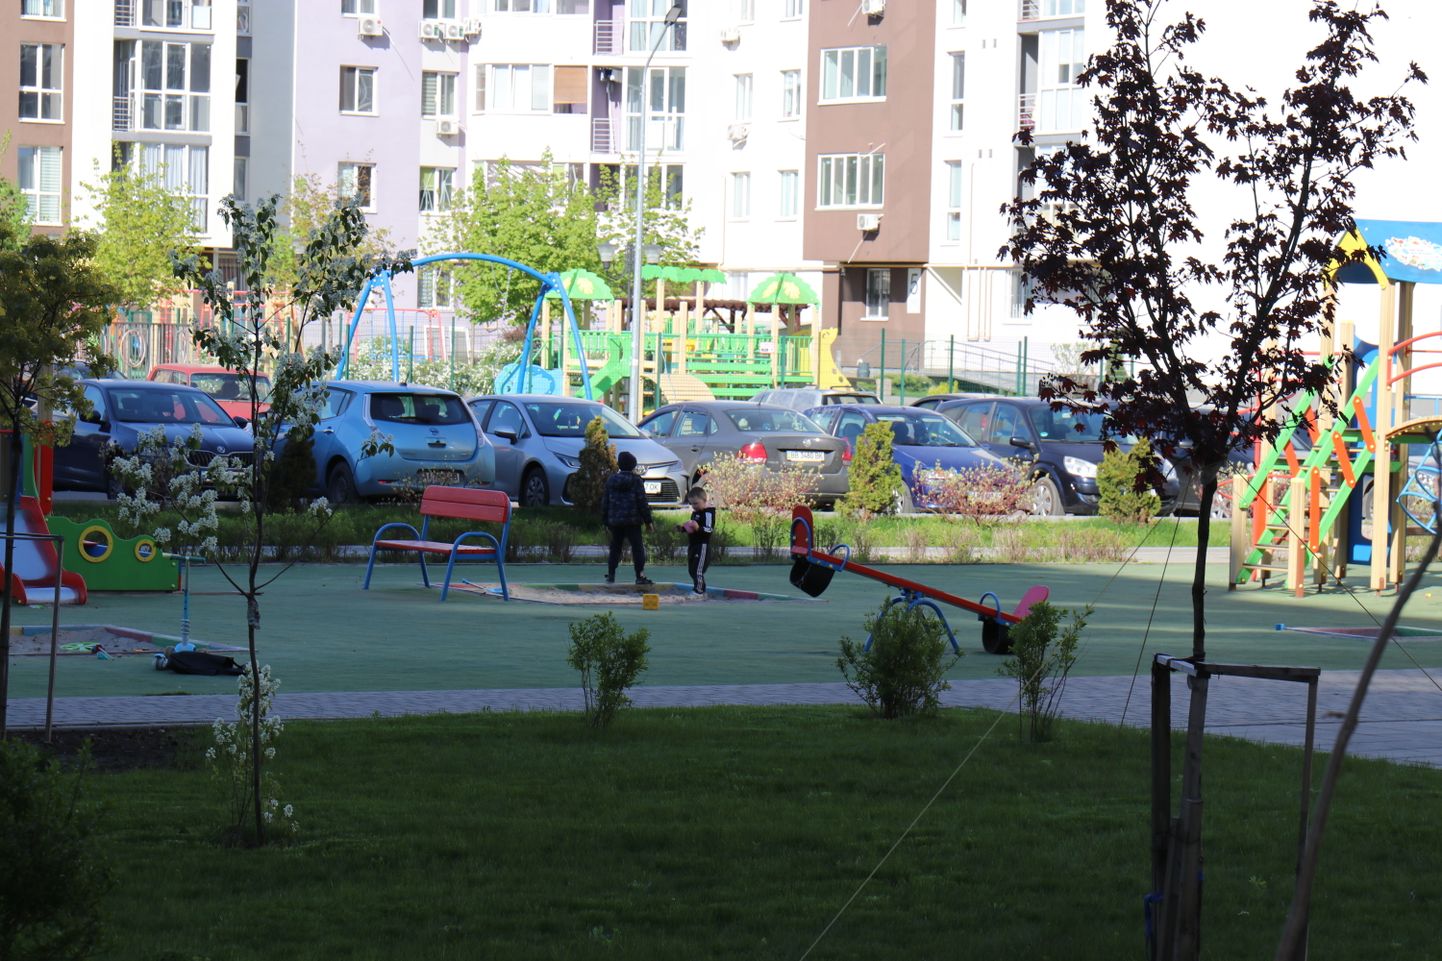 Буча, май 2022 года. Семьи начинают возвращаться в город, на детской площадке в жилом квартале играют дети.